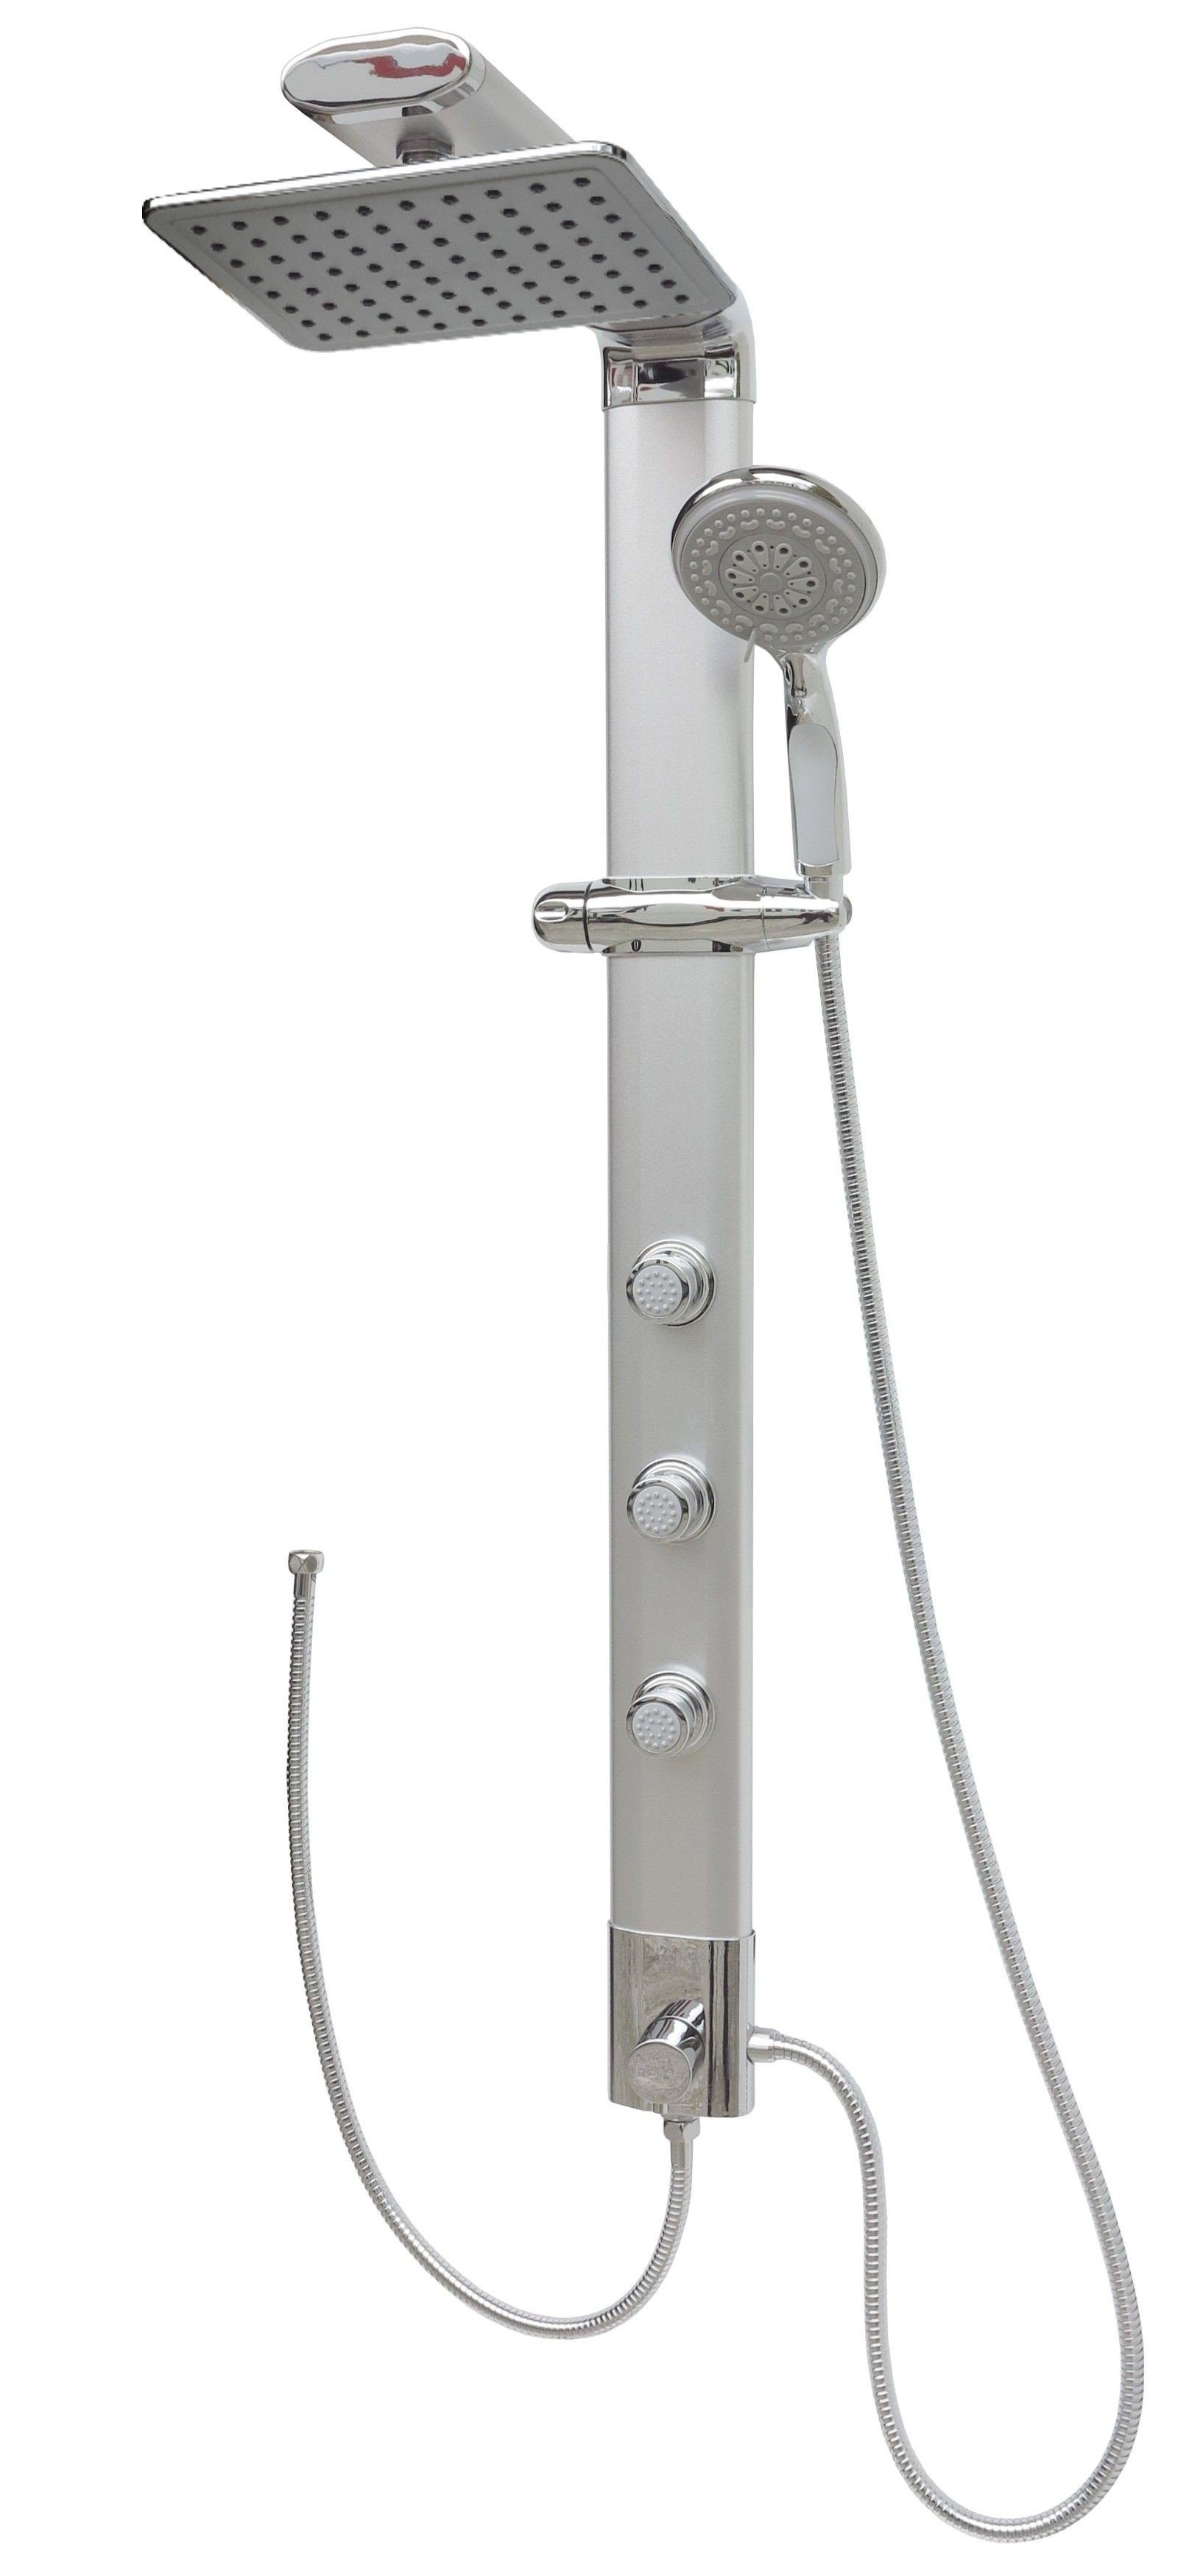 LED Regendusche Duschpaneel Duschsäule Duschset mit Handbrause Edelstahl Profi 